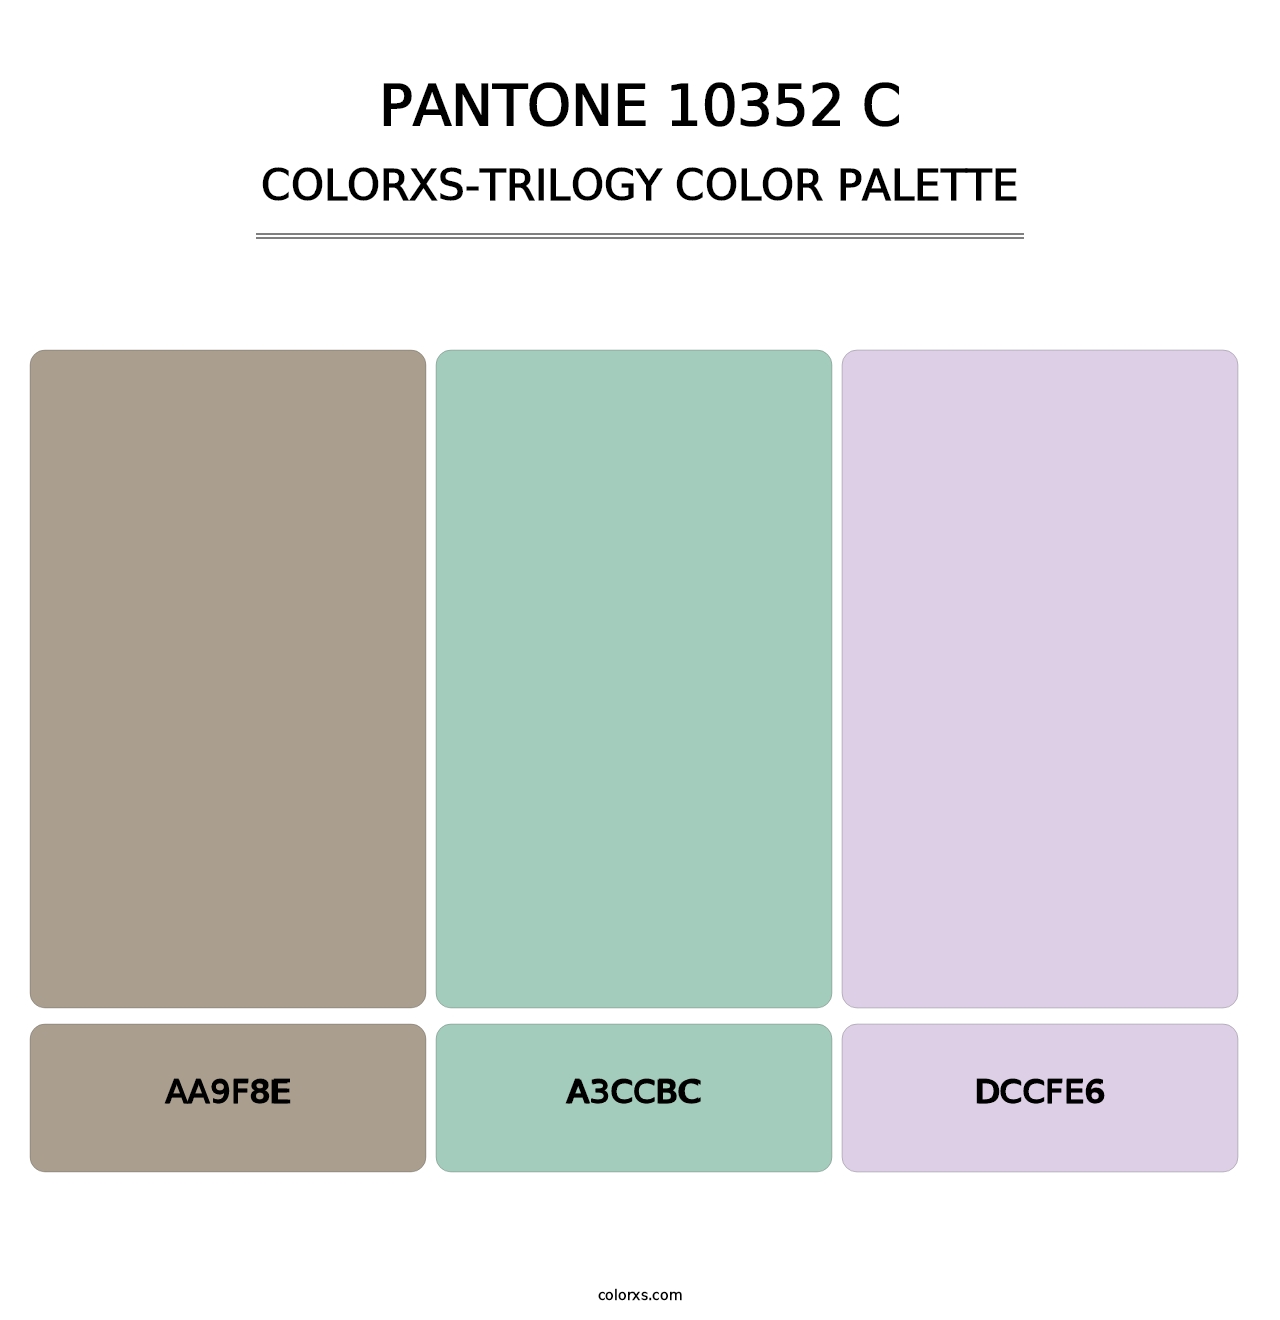 PANTONE 10352 C - Colorxs Trilogy Palette